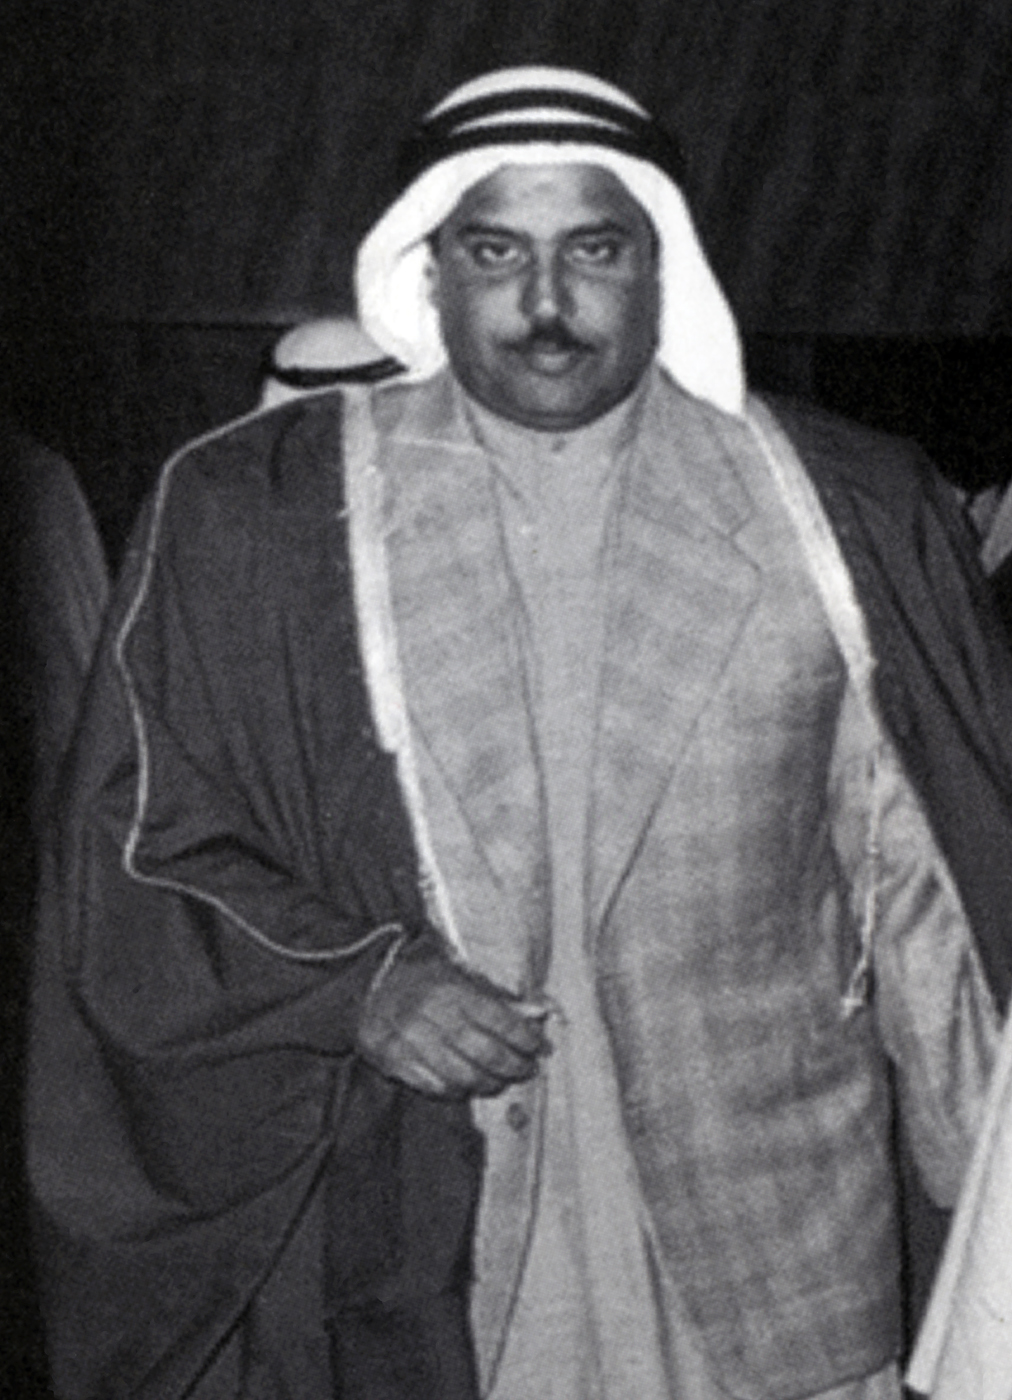 عضو المجلس التأسيسي عام 1962والنائب السابق في مجلس الأمة الراحل يوسف خالد المخلد